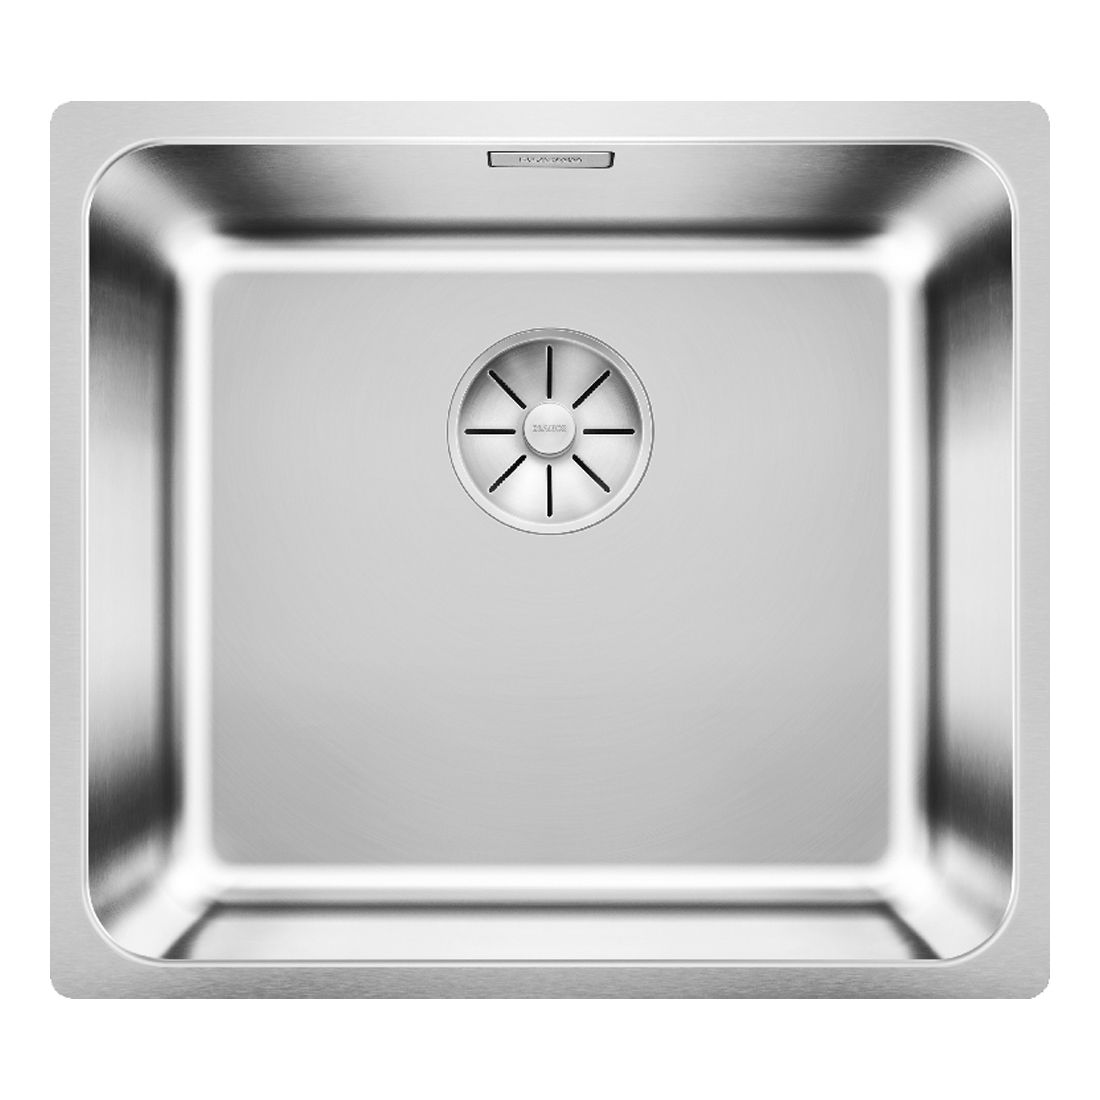 Кухонная мойка Blanco Solis 450-U полированная сталь кухонная мойка franke 101 0689 948 нержавеющая сталь